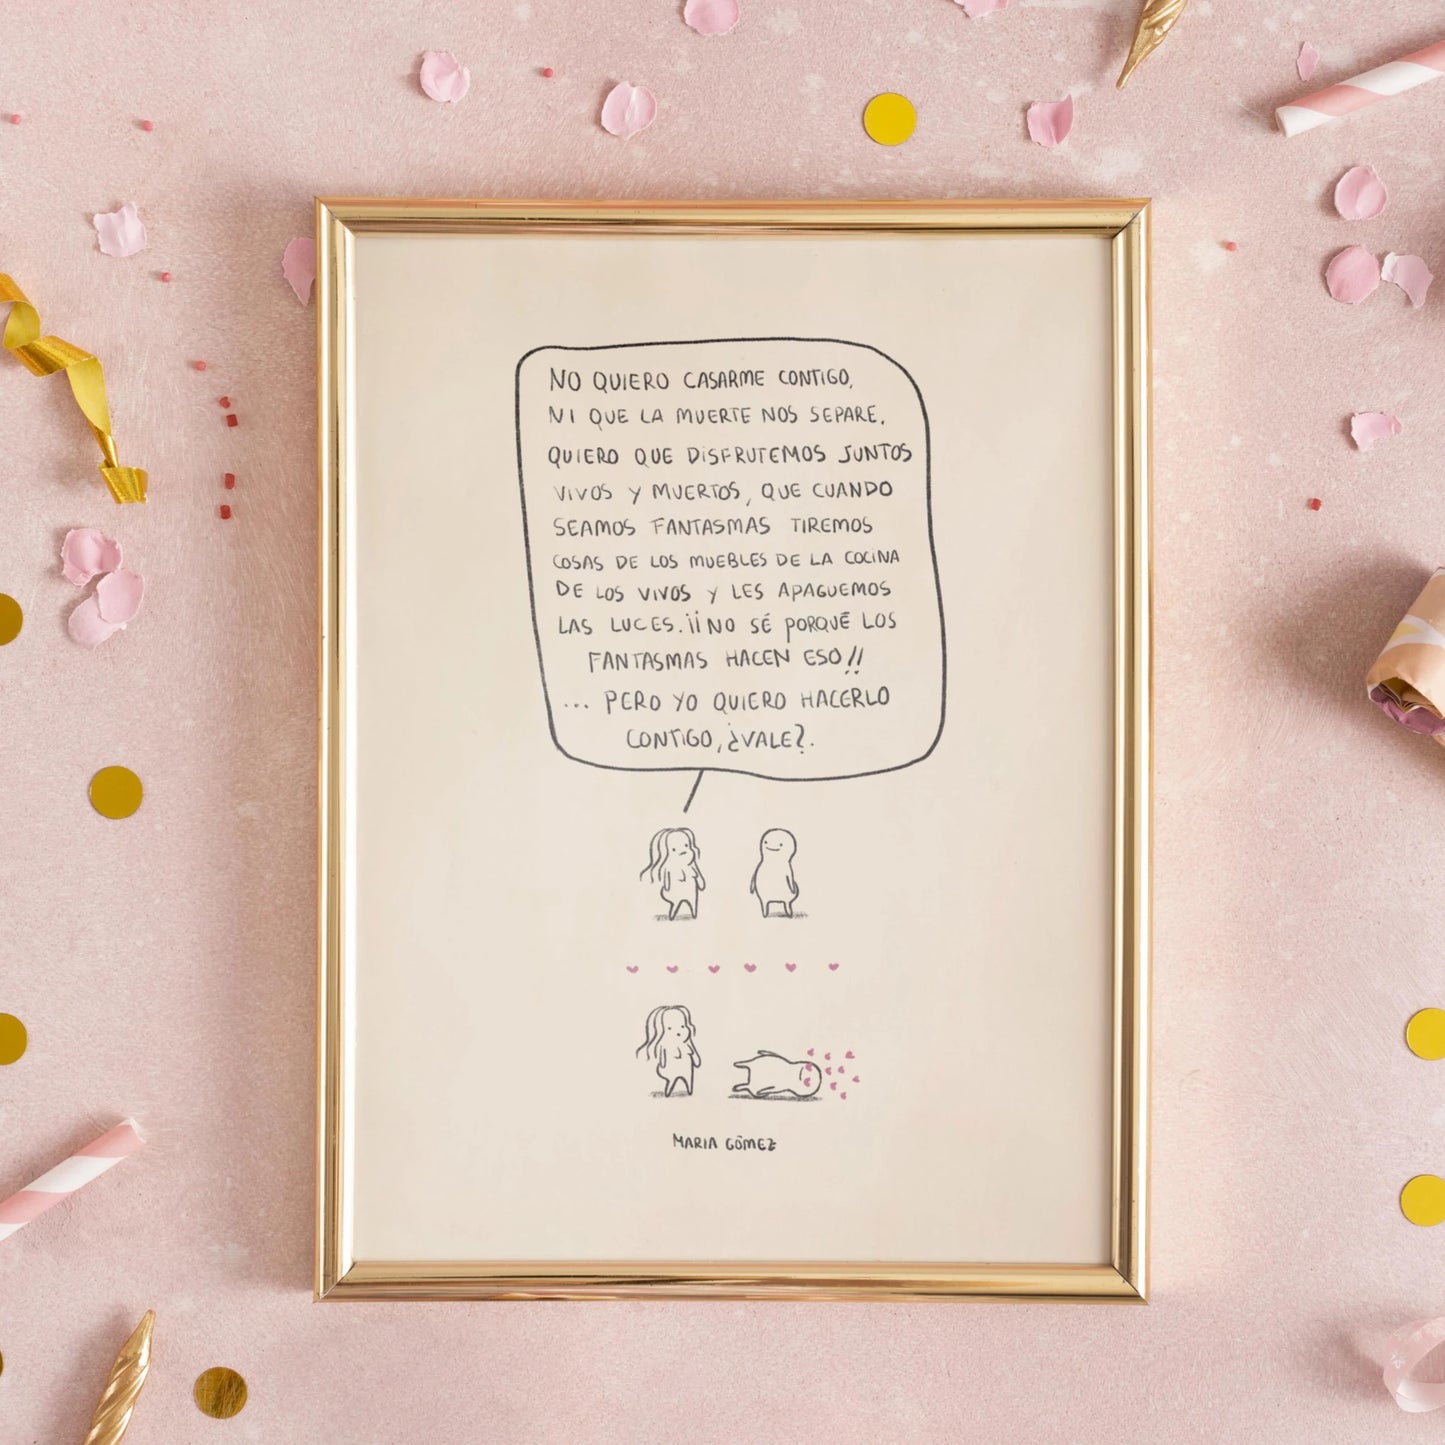 Ilustración seamos fantasmas de María Gómez enmarcada en un cuadro dorado sobre un fondo rosa y con confeti y cosas de fiesta de fondo